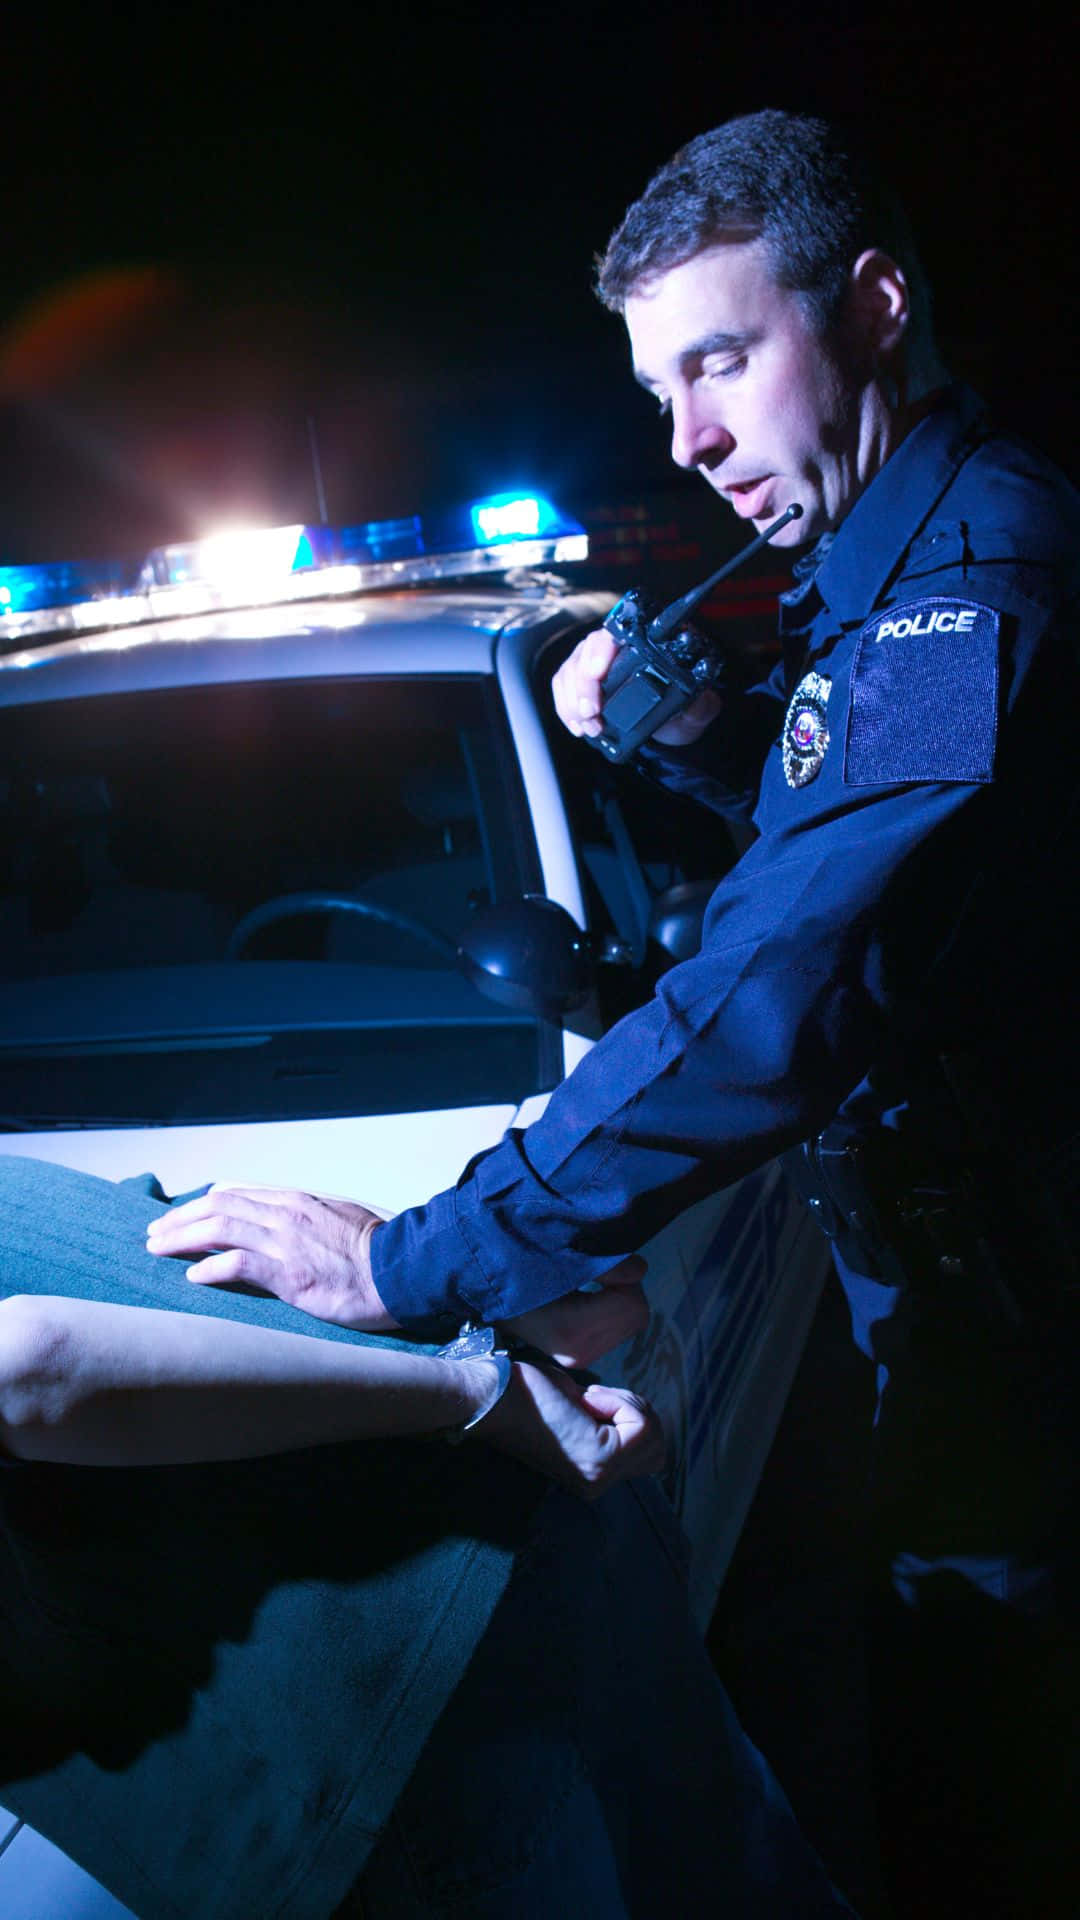 Polizistnimmt Mann Während Einer Alkoholkontrolle Fest Wallpaper